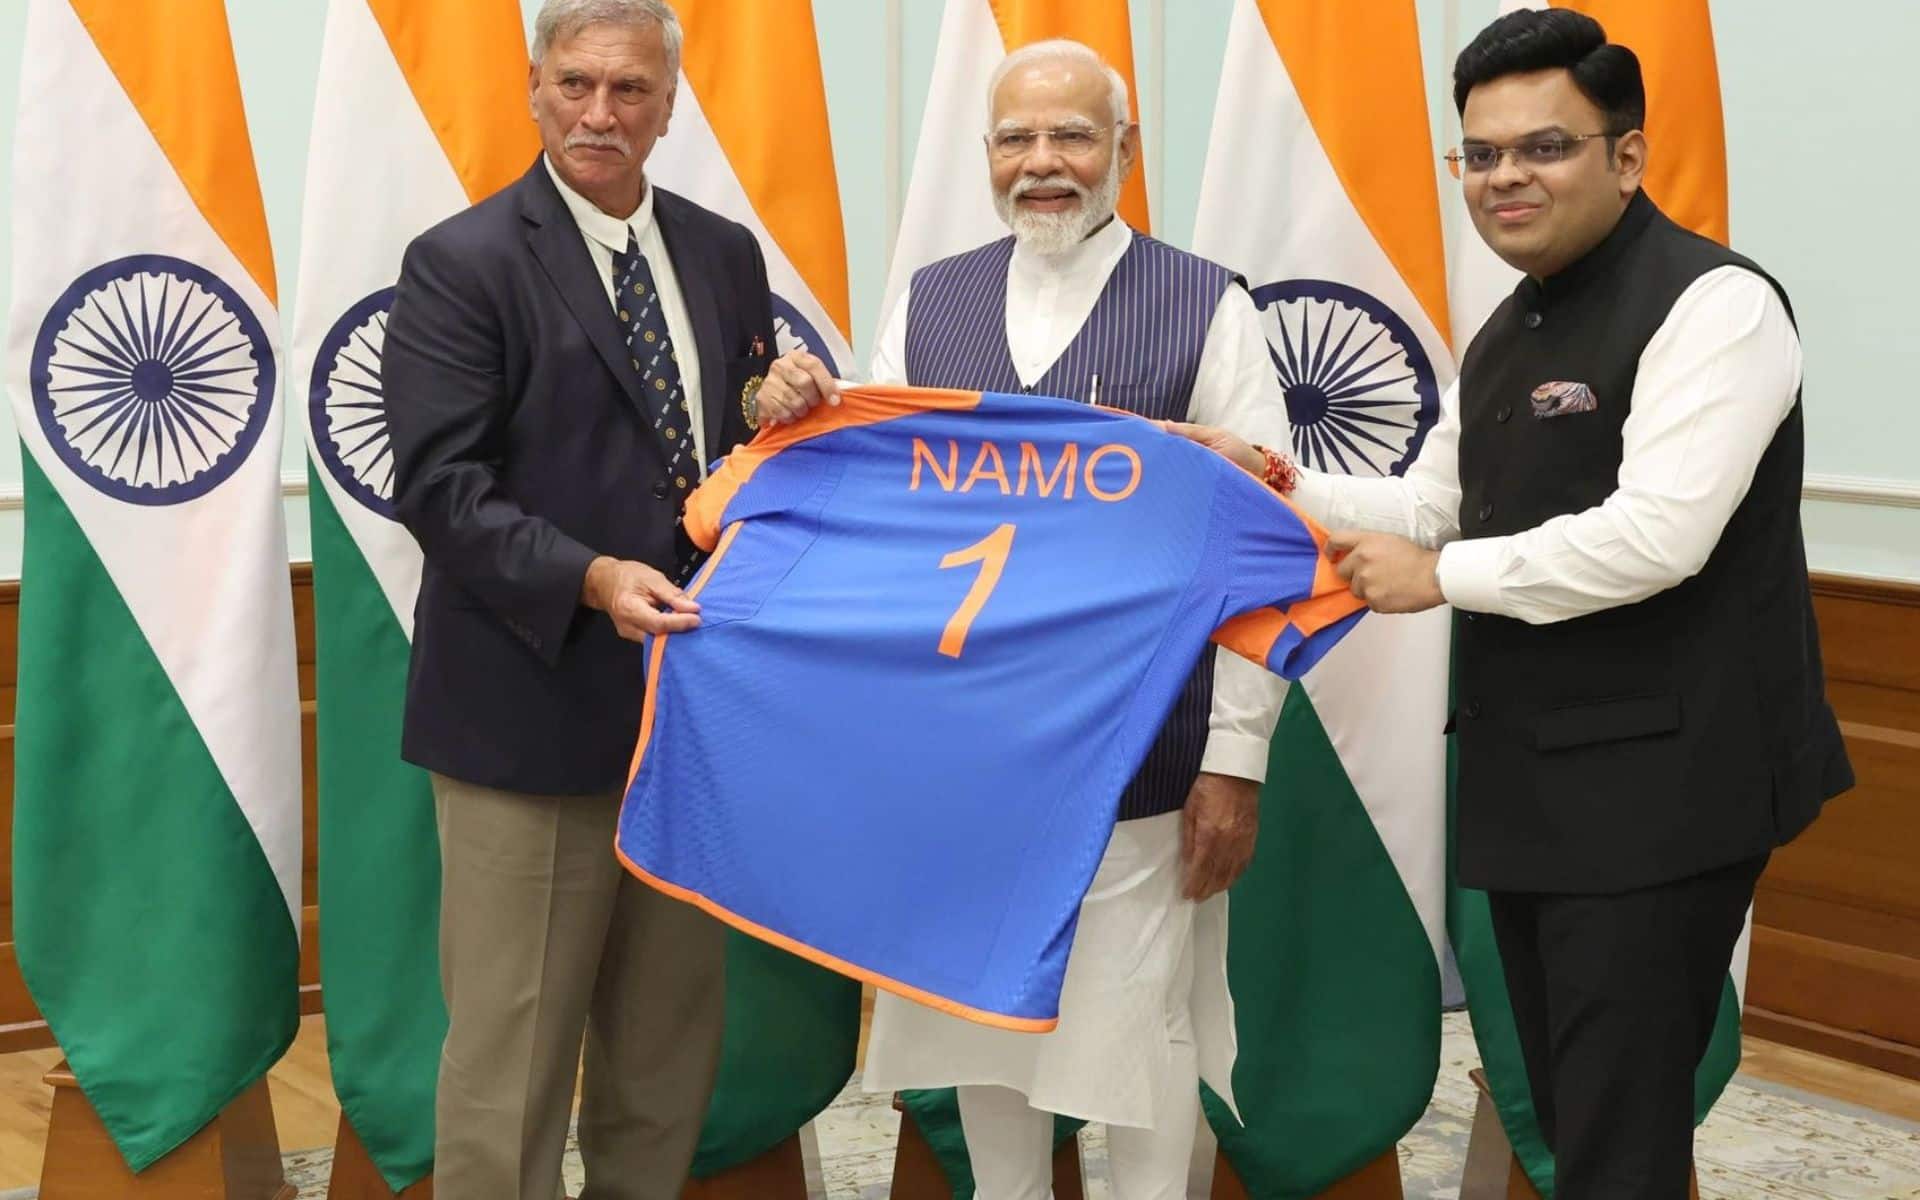 T20 विश्व कप जीत के बाद प्रधानमंत्री नरेंद्र मोदी को सौंपी गई टीम इंडिया की विशेष 'नमो' जर्सी